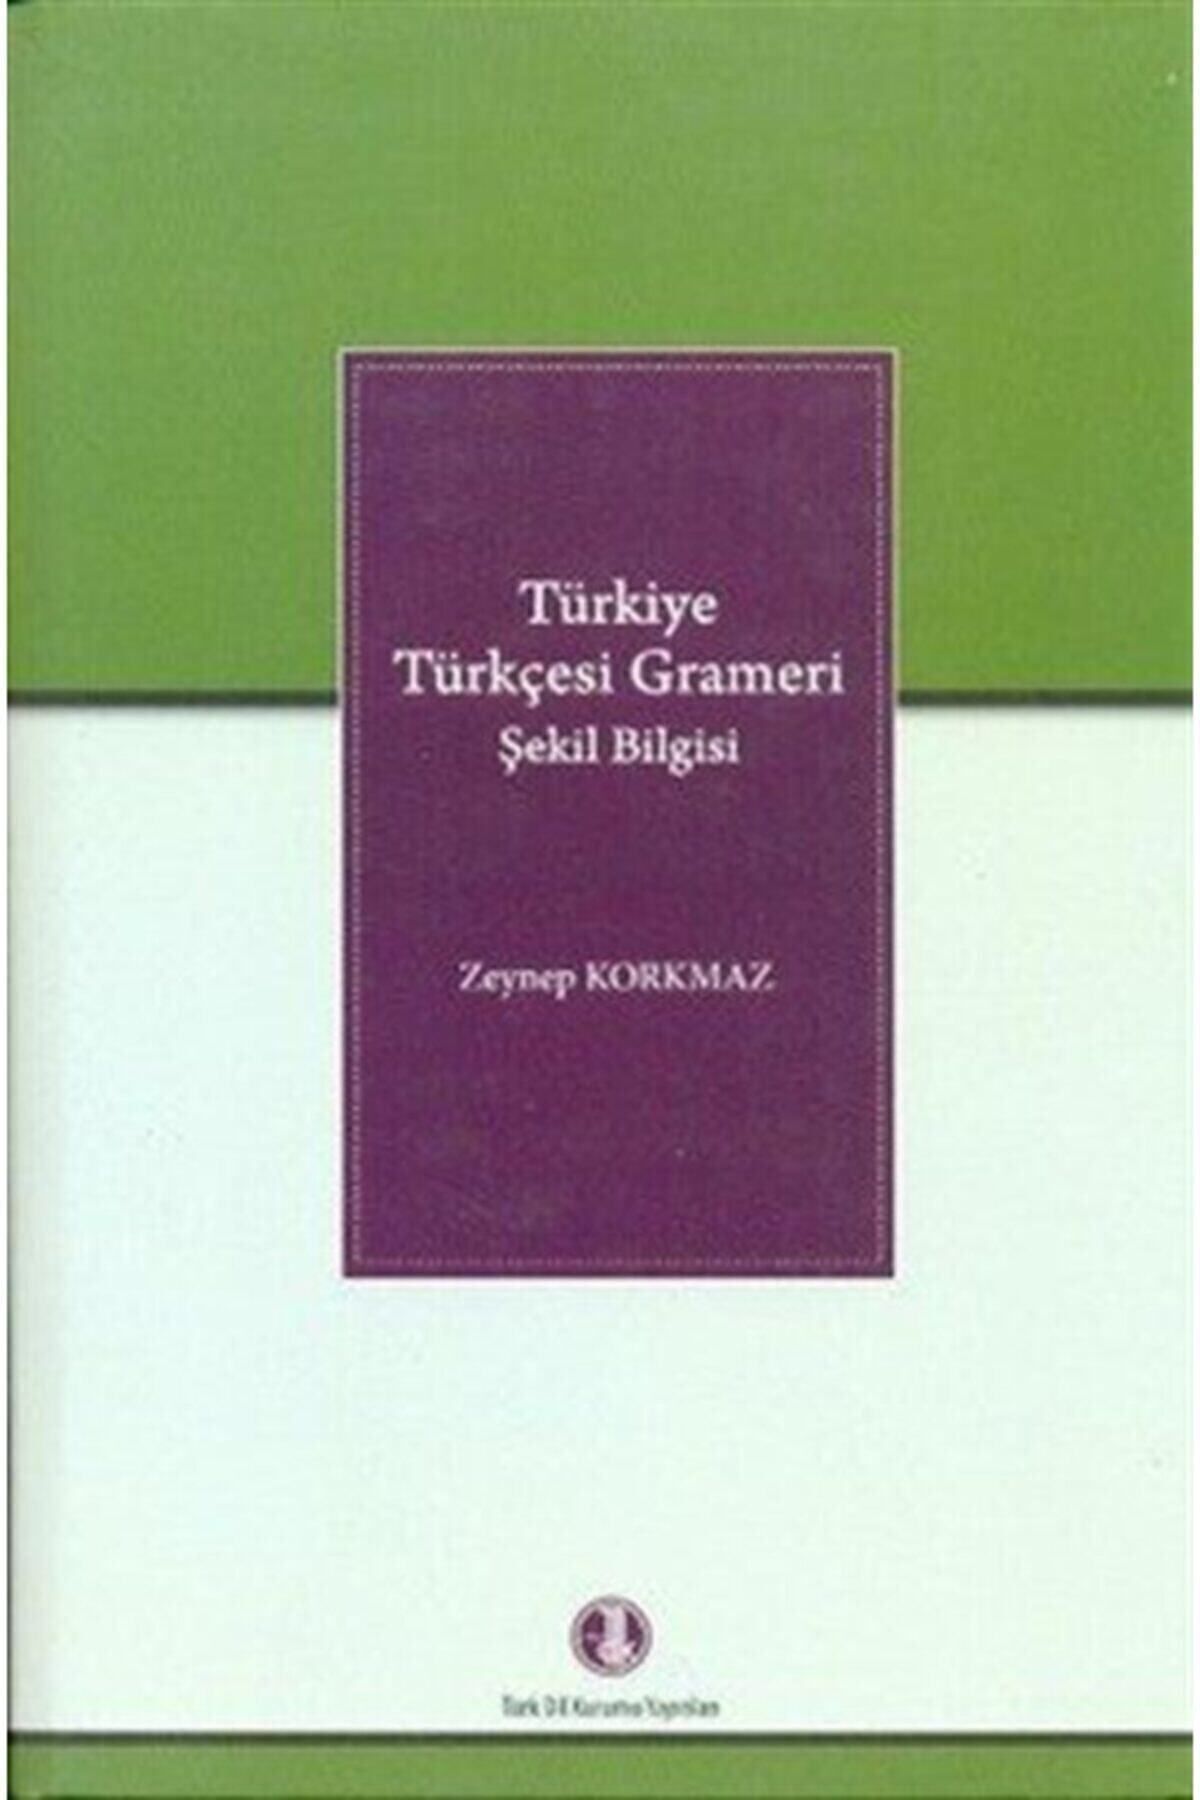 Türk Dil Kurumu Yayınları Türkiye Türkçesi Grameri Şekil Bilgisi - Zeynep Korkmaz 9789751628411